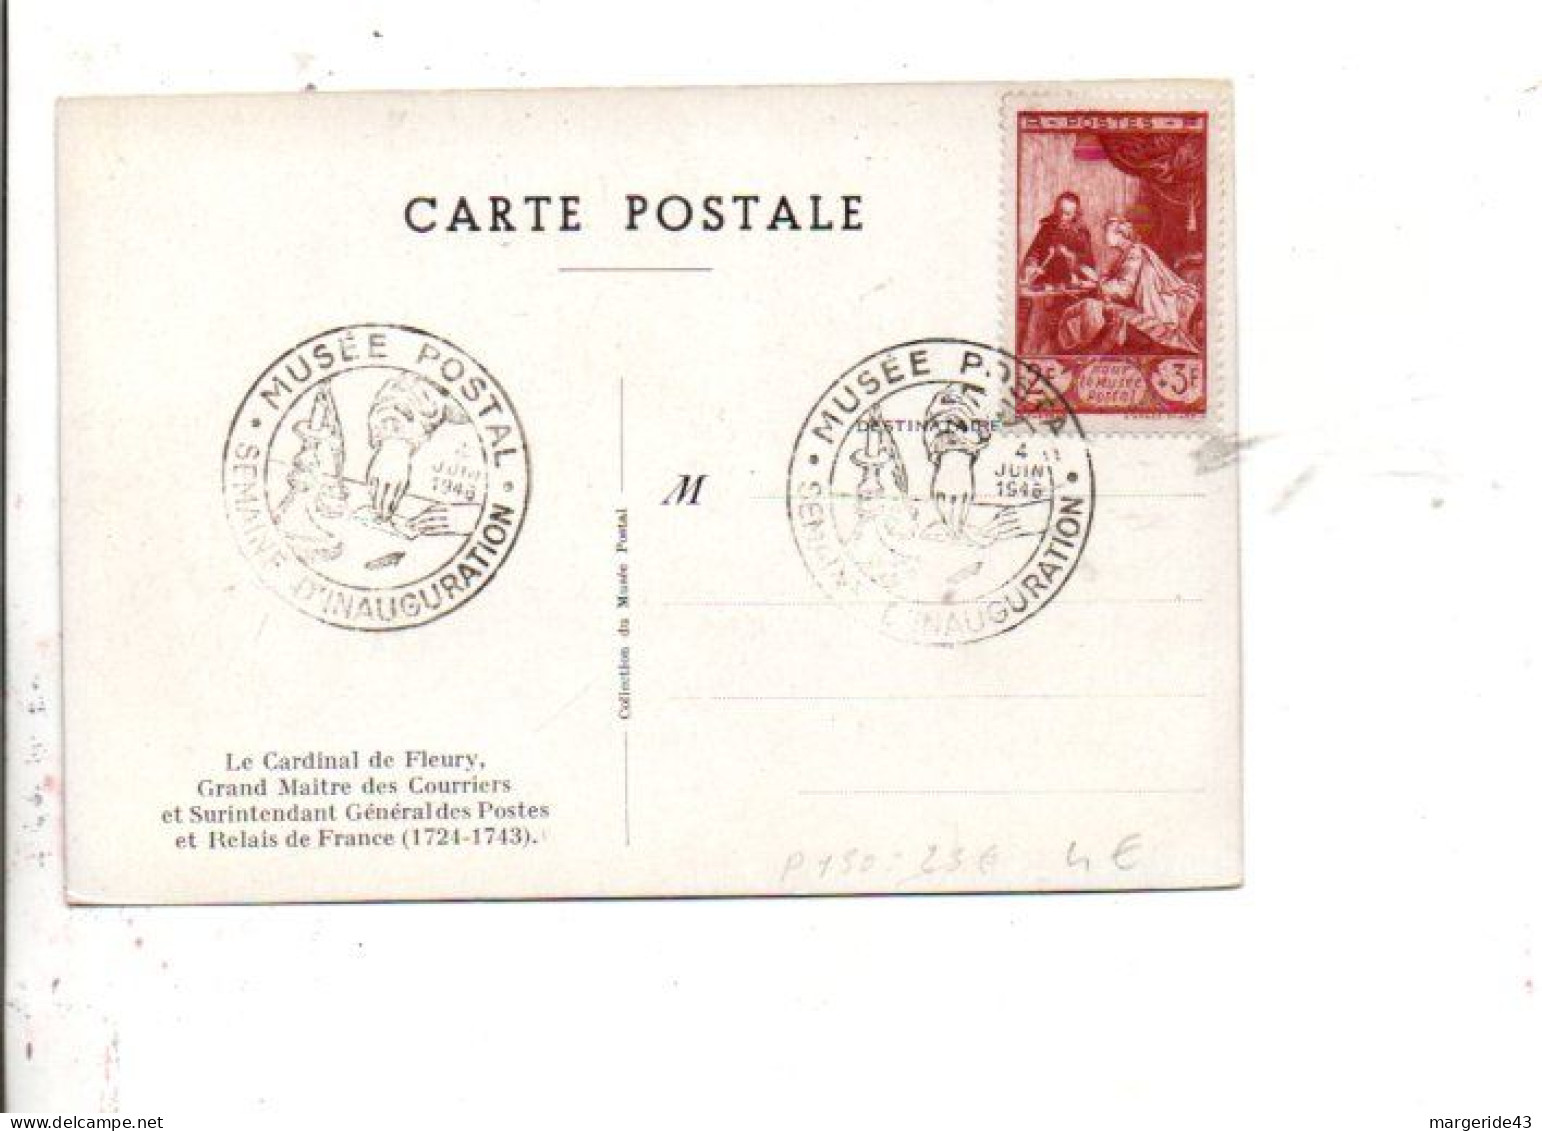 SEMAINE D'INAUGURATION DU MUSEE POSTAL PARIS 1946 - Cachets Commémoratifs